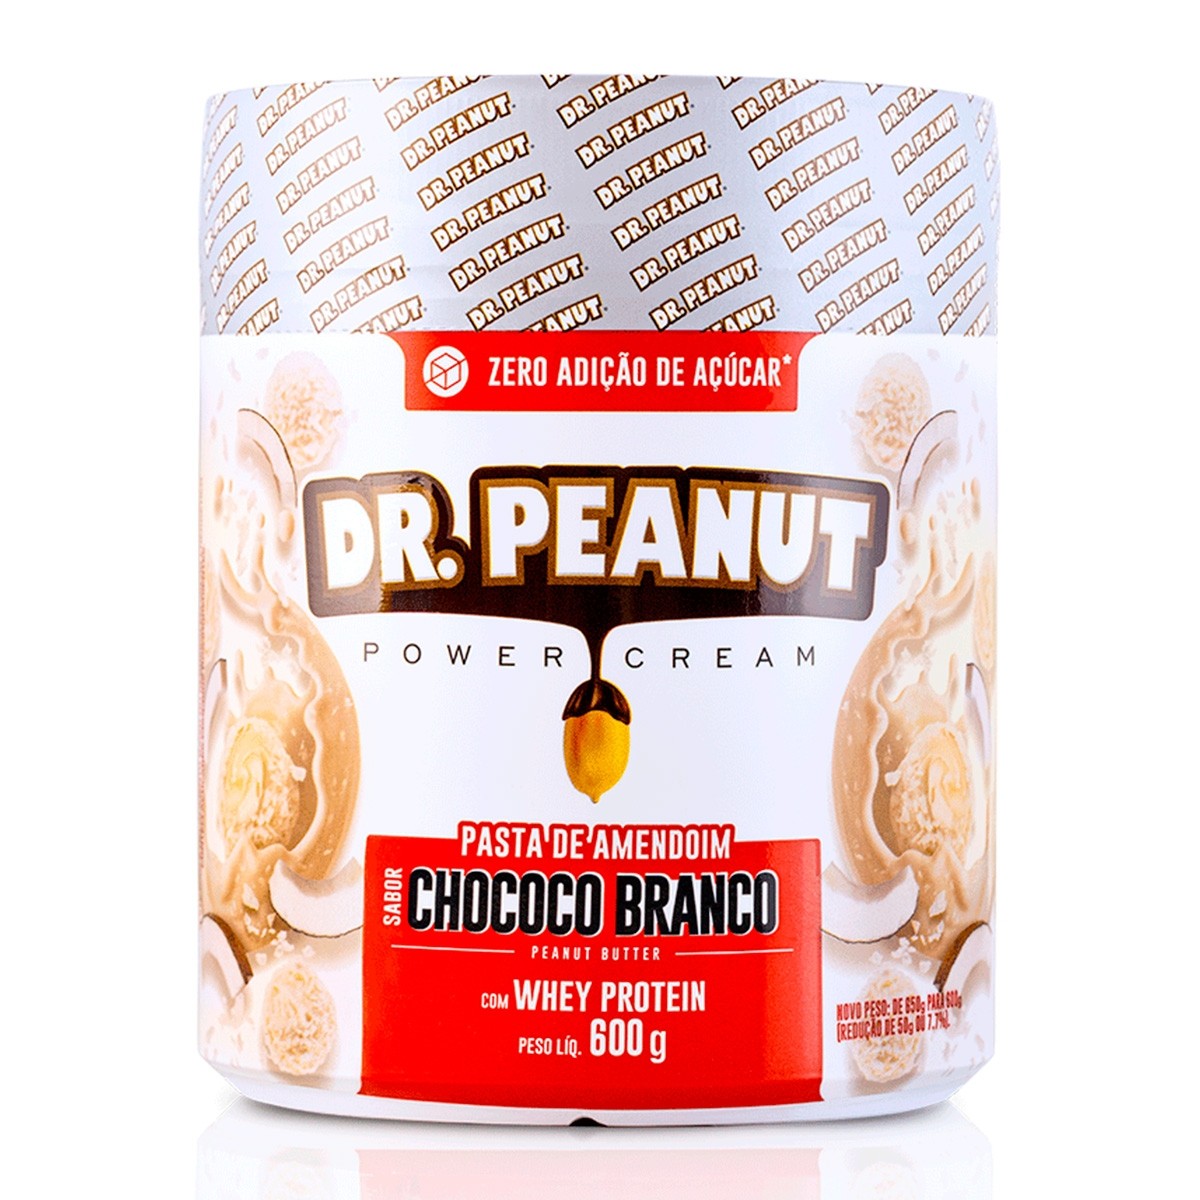 Pasta de Amendoim sabor Cookies e Cream com Whey Protein (600g) Dr